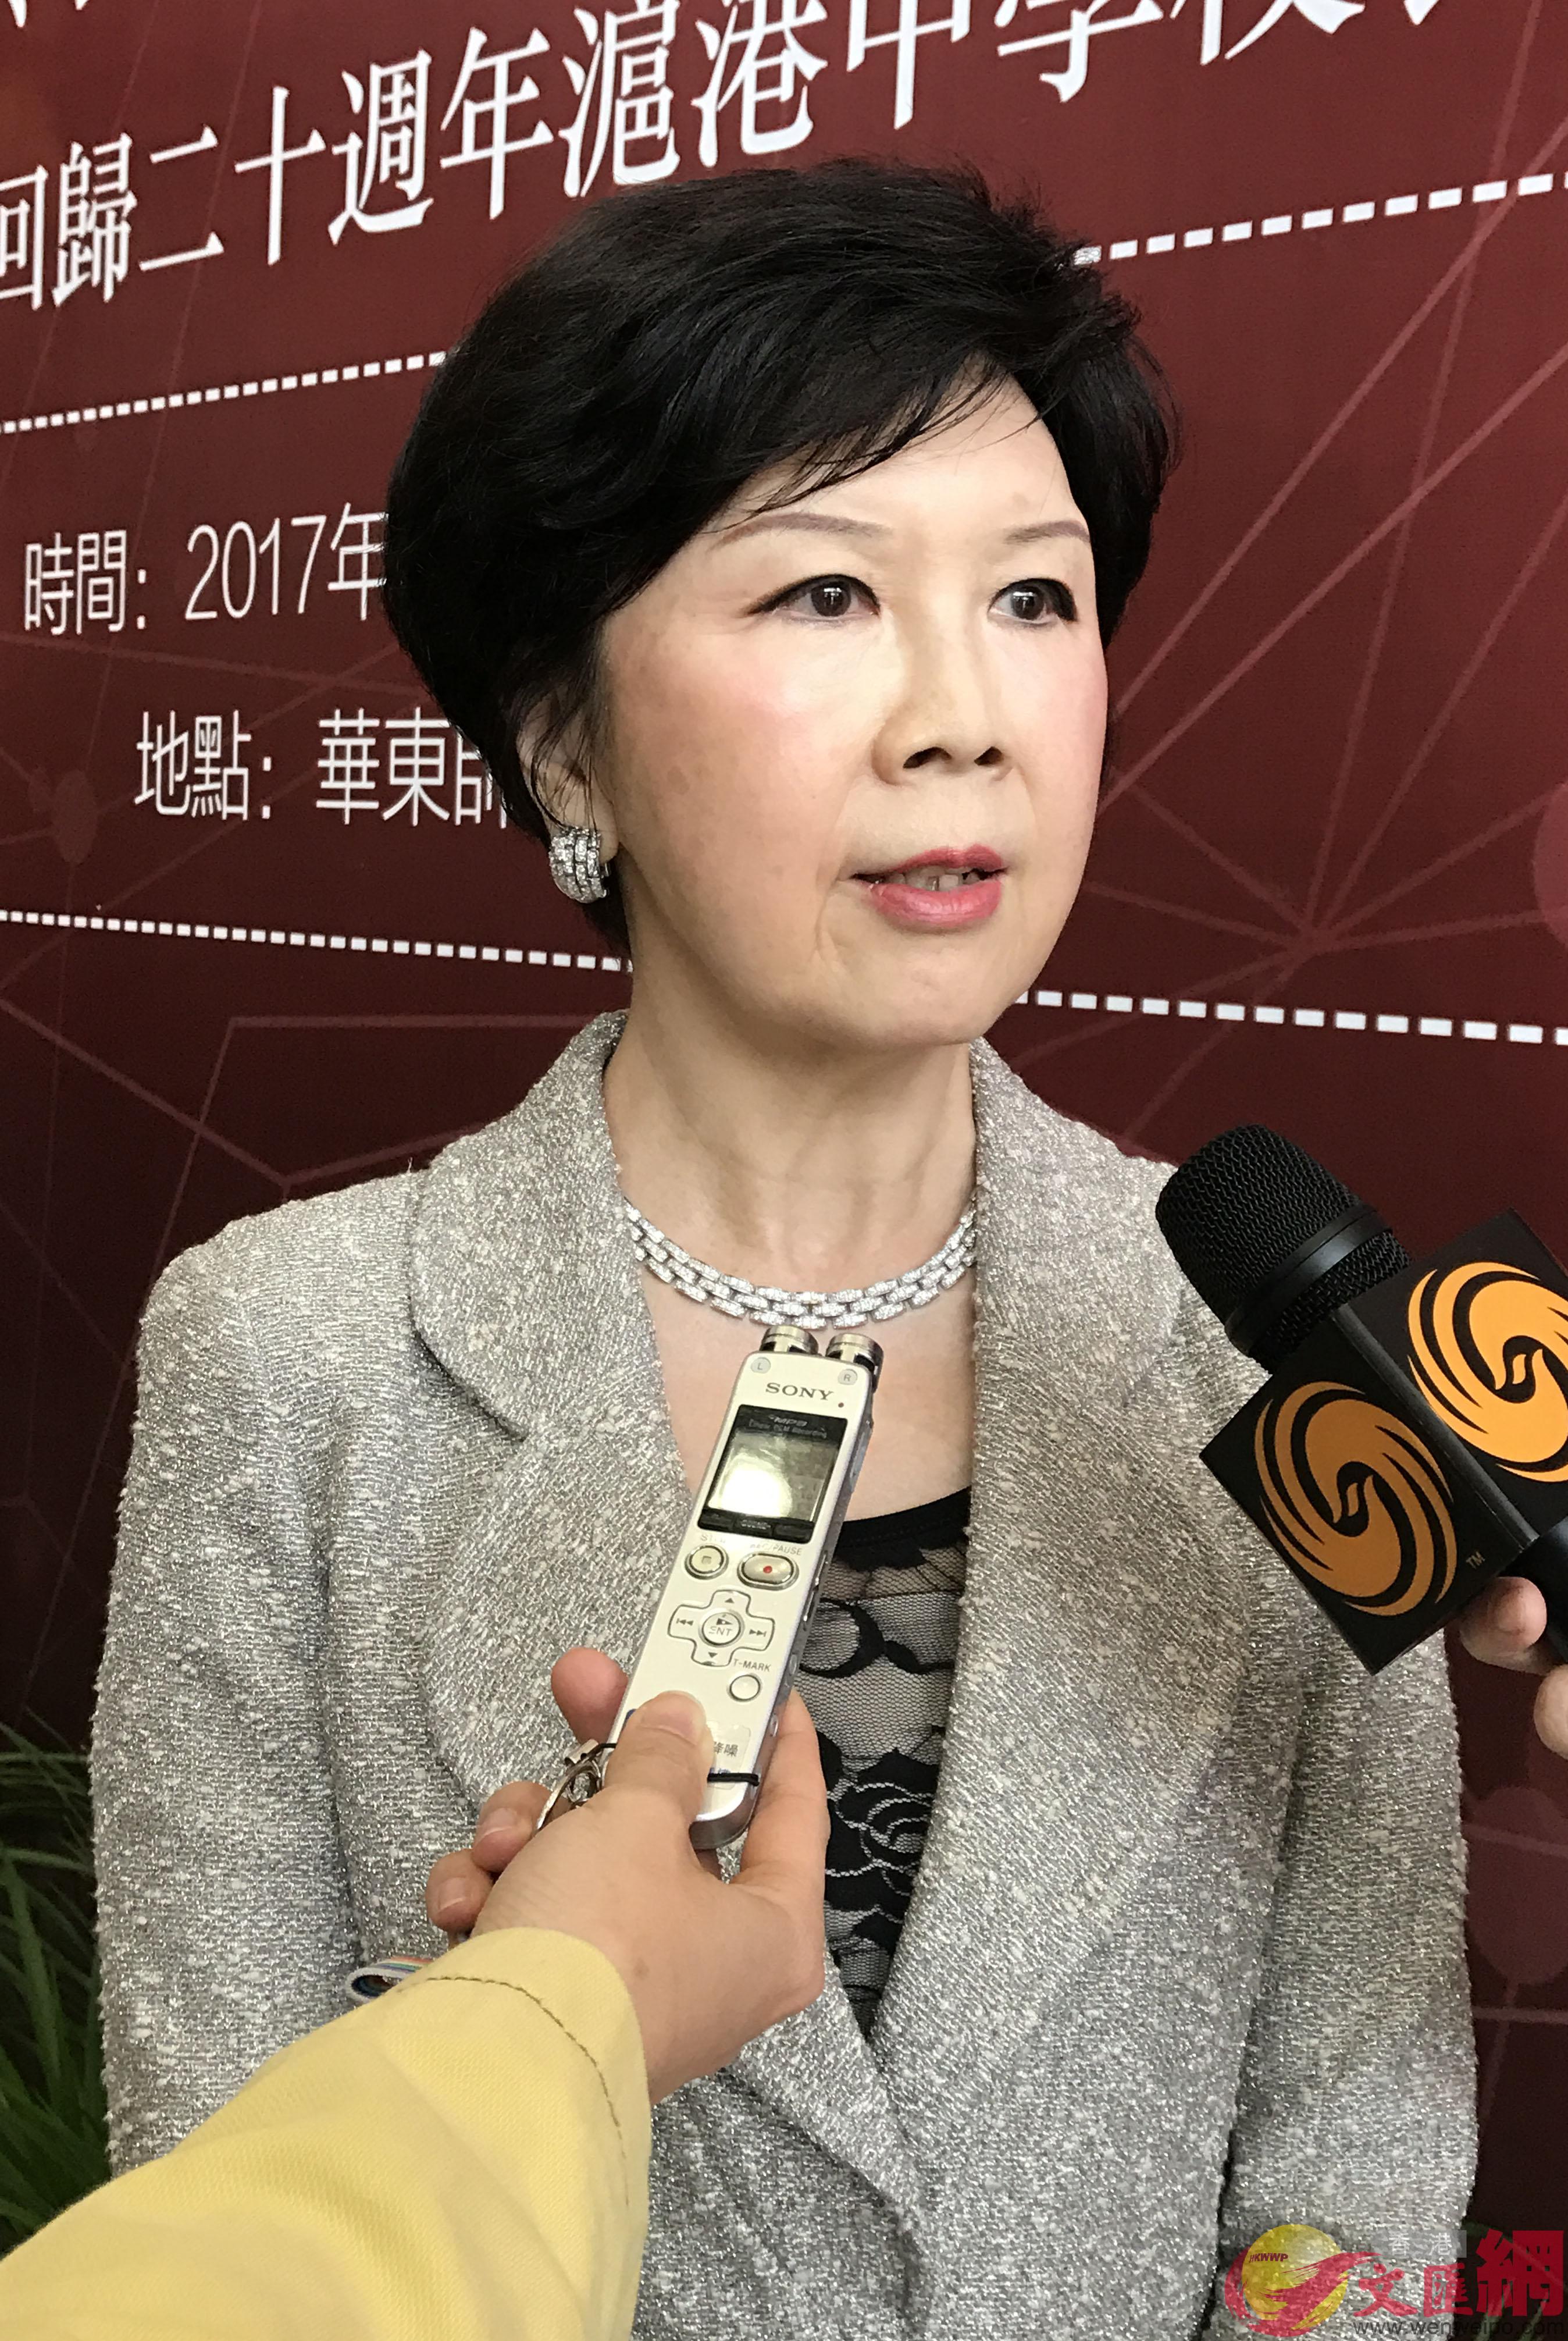 香港大中华会主席胡葆琳表示增进教育交流可防止「港独」噪音（记者孔雯琼摄影）